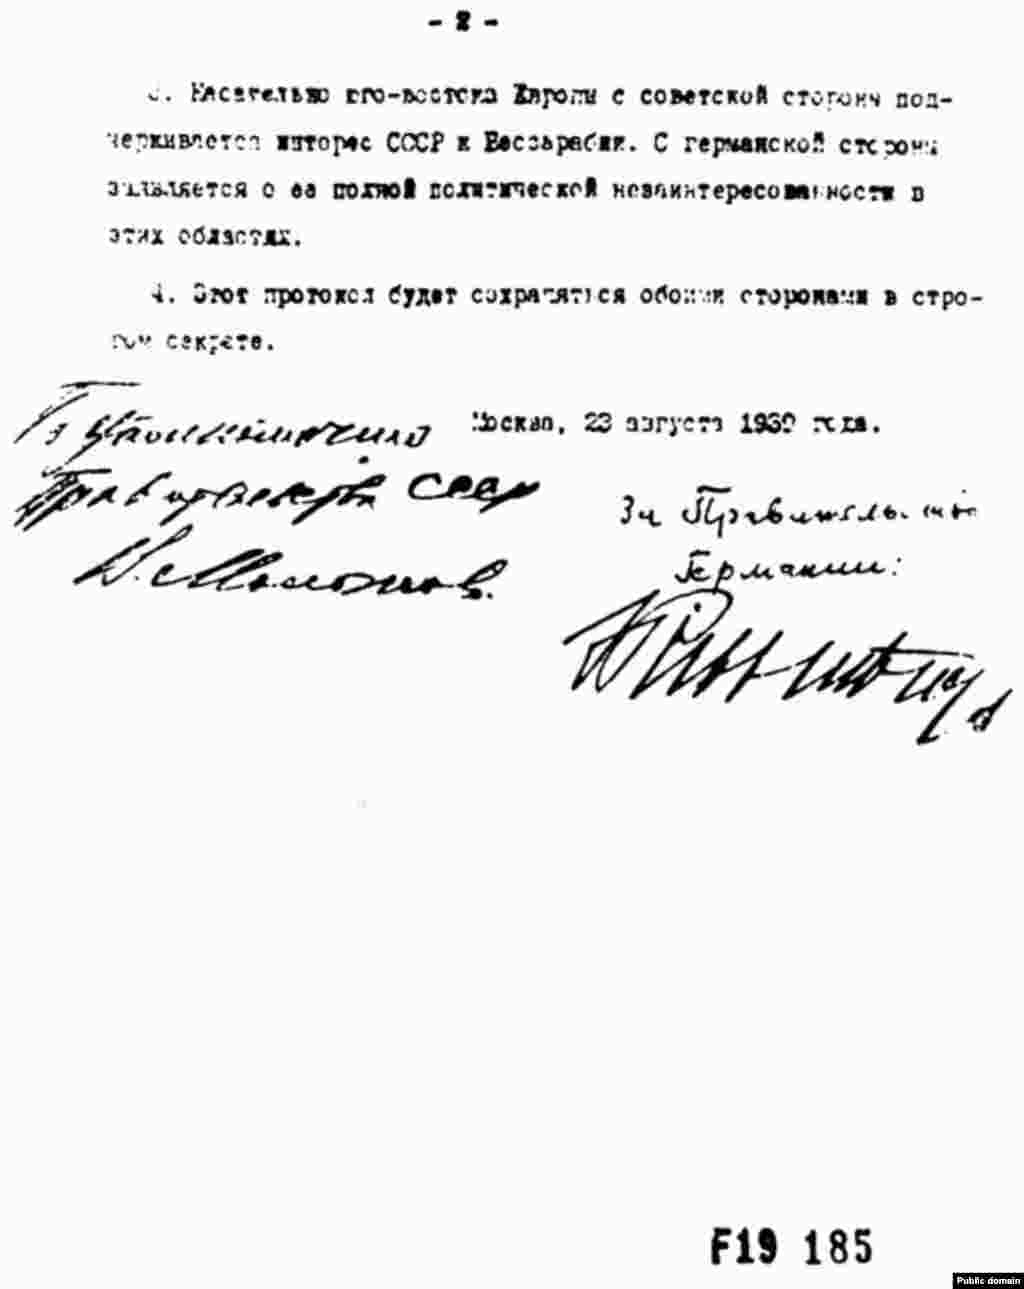 Același document în limba rusă.